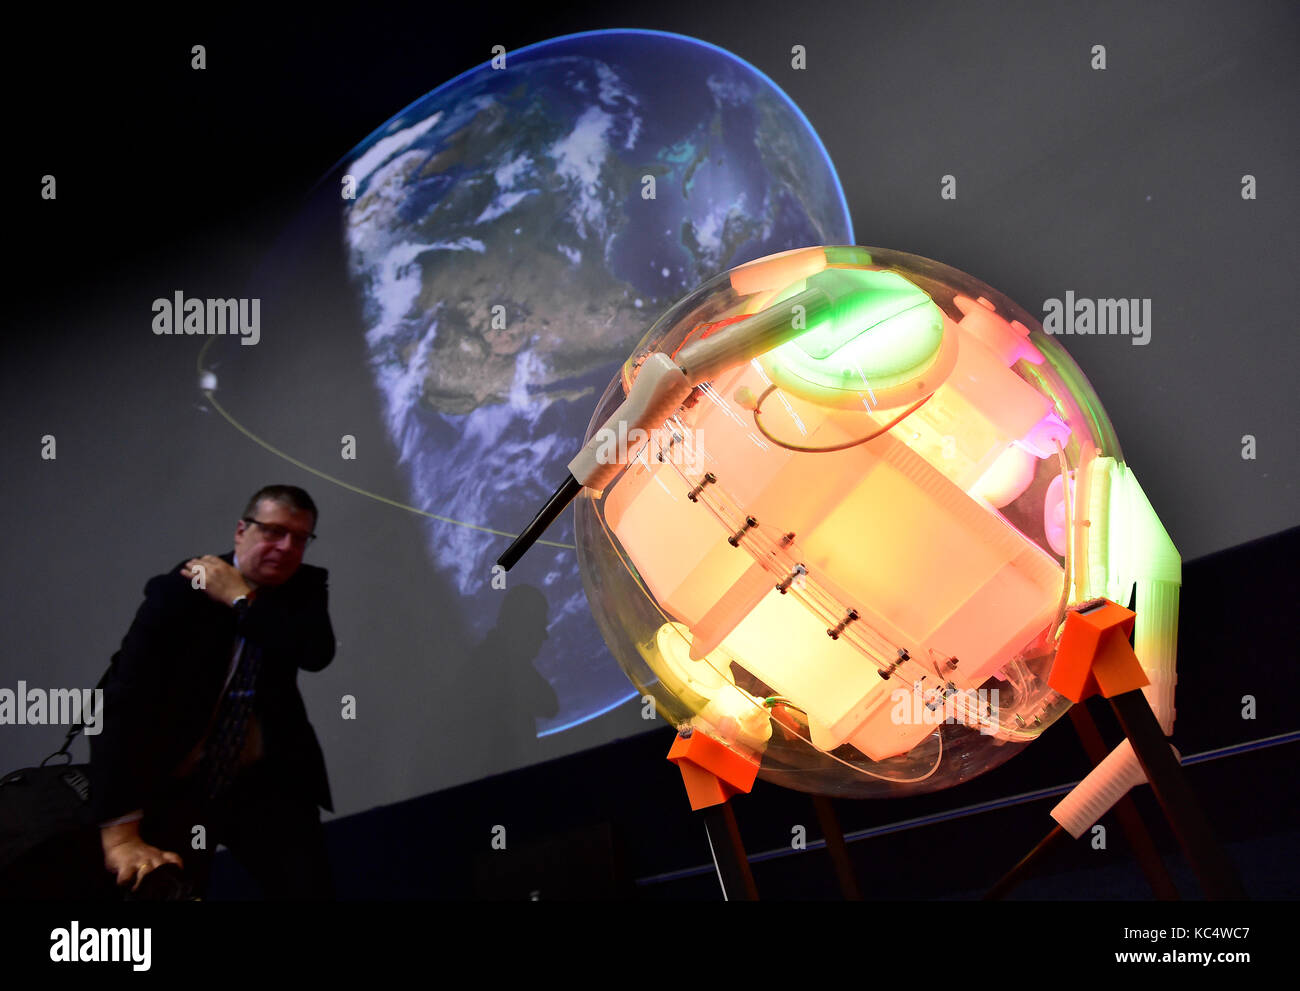 Prag, Tschechische Republik. 03 Okt, 2017. Replik von Sputnik 1, 3D-Drucker hergestellt ist, ist während der Pressekonferenz am 60. Jahrestag der Einführung des ersten künstlichen Satelliten Sputnik 1 gesehen, Planetarium in Prag, Tschechische Republik, am 3. Oktober 2017. Credit: Roman Vondrous/CTK Photo/Alamy leben Nachrichten Stockfoto